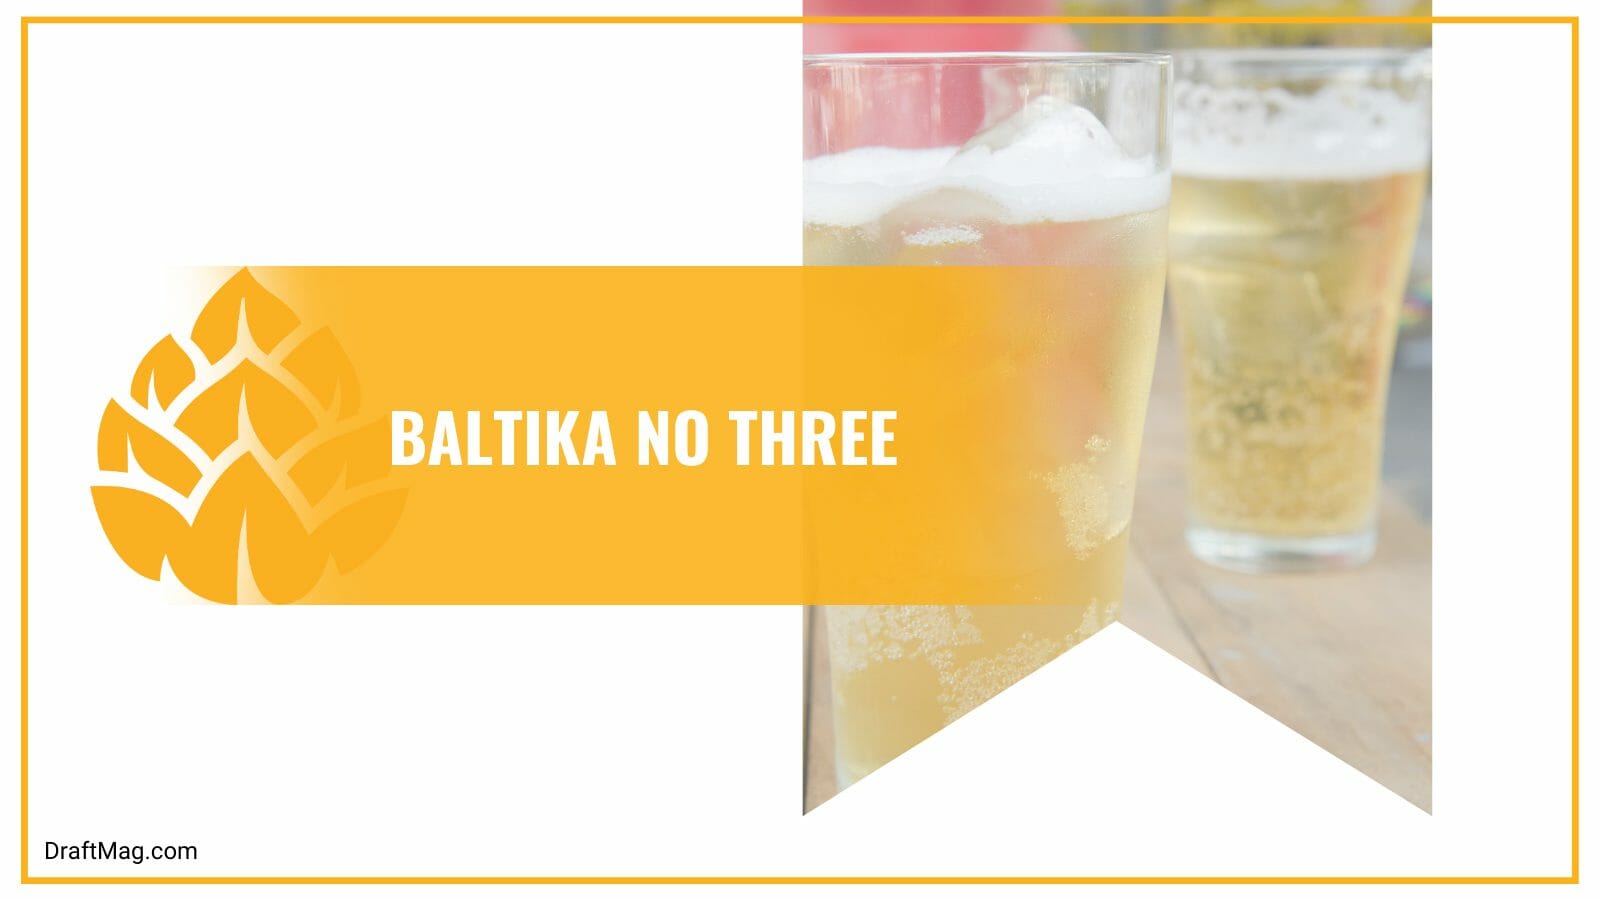 Baltika no three